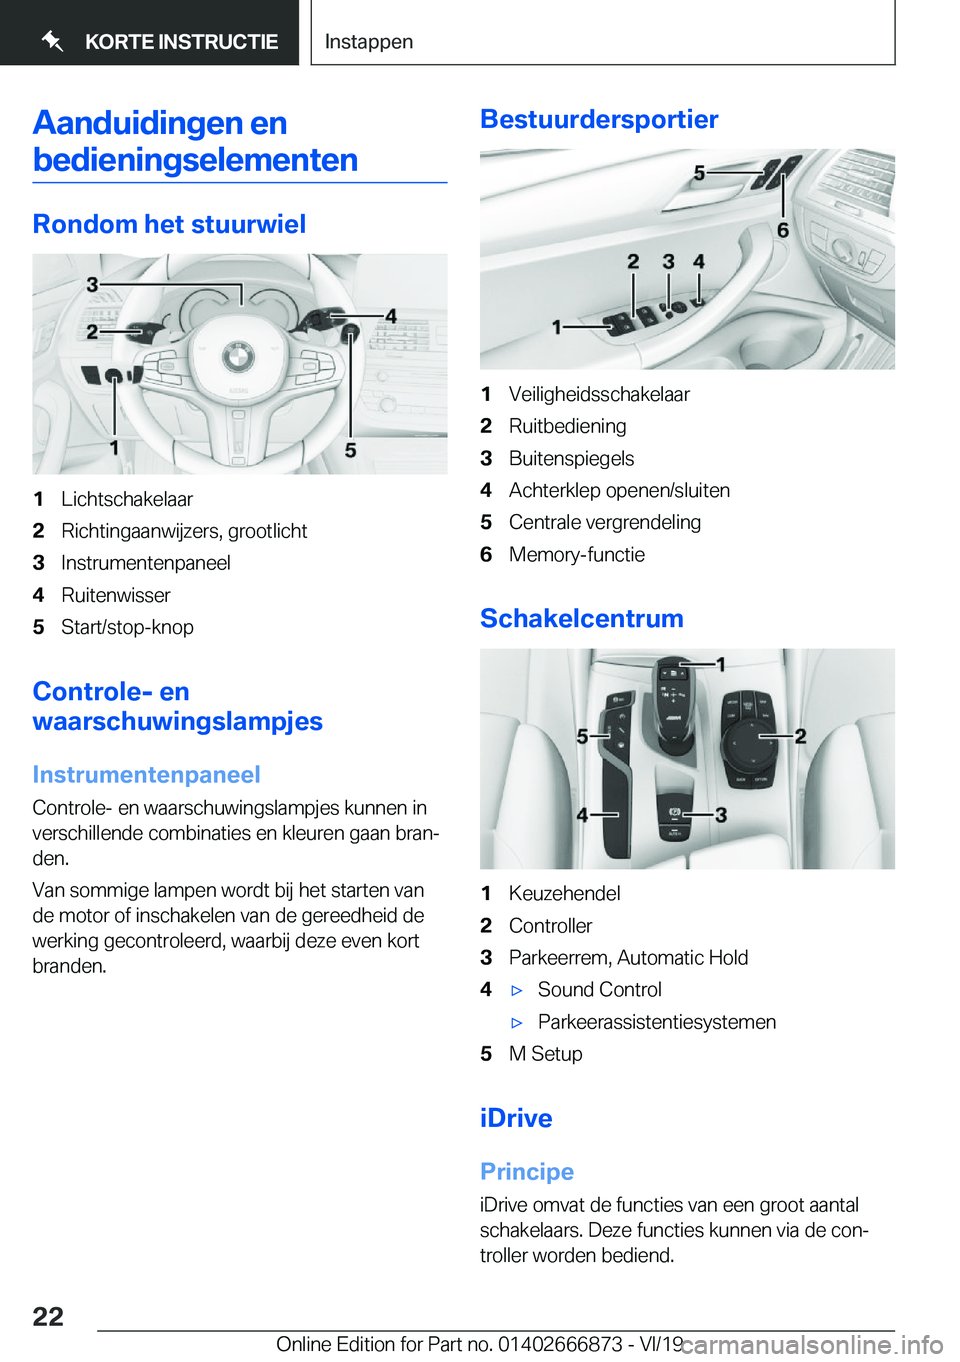 BMW X4 M 2020  Instructieboekjes (in Dutch) �A�a�n�d�u�i�d�i�n�g�e�n��e�n�b�e�d�i�e�n�i�n�g�s�e�l�e�m�e�n�t�e�n
�R�o�n�d�o�m��h�e�t��s�t�u�u�r�w�i�e�l
�1�L�i�c�h�t�s�c�h�a�k�e�l�a�a�r�2�R�i�c�h�t�i�n�g�a�a�n�w�i�j�z�e�r�s�,��g�r�o�o�t�l�i�c